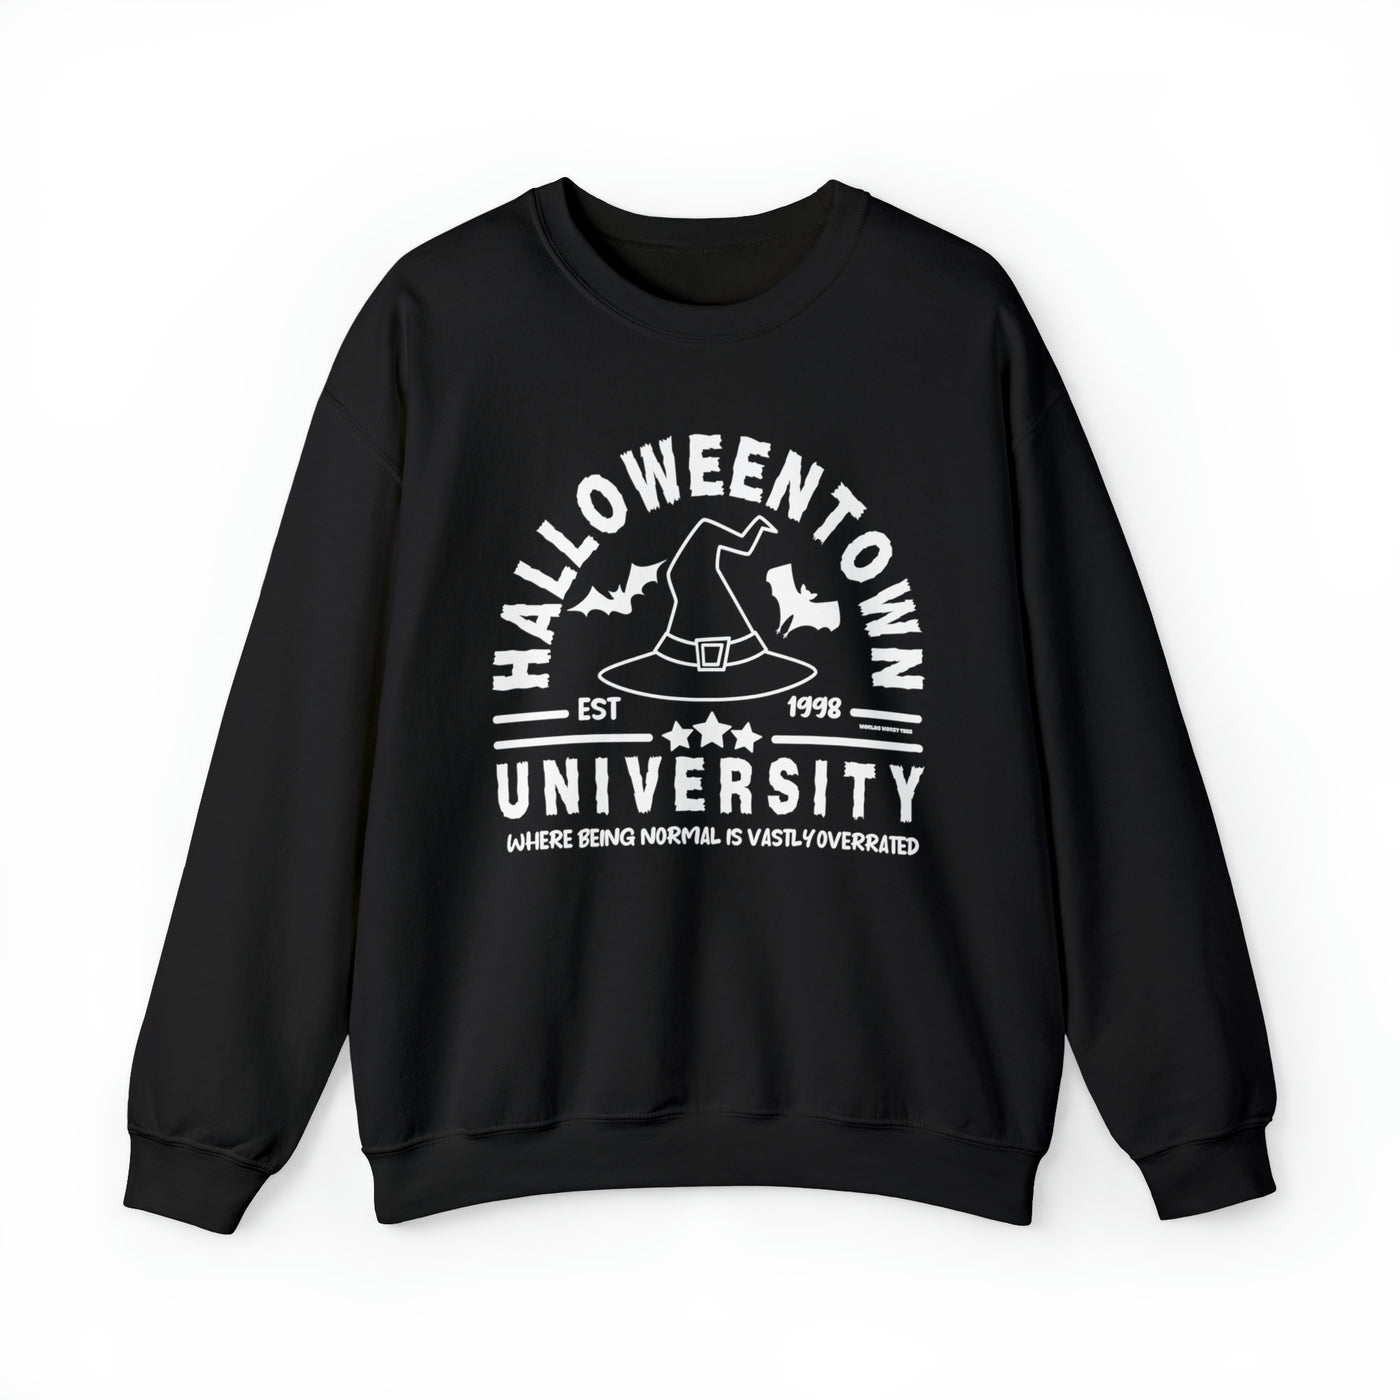 Halloweentown University Crew